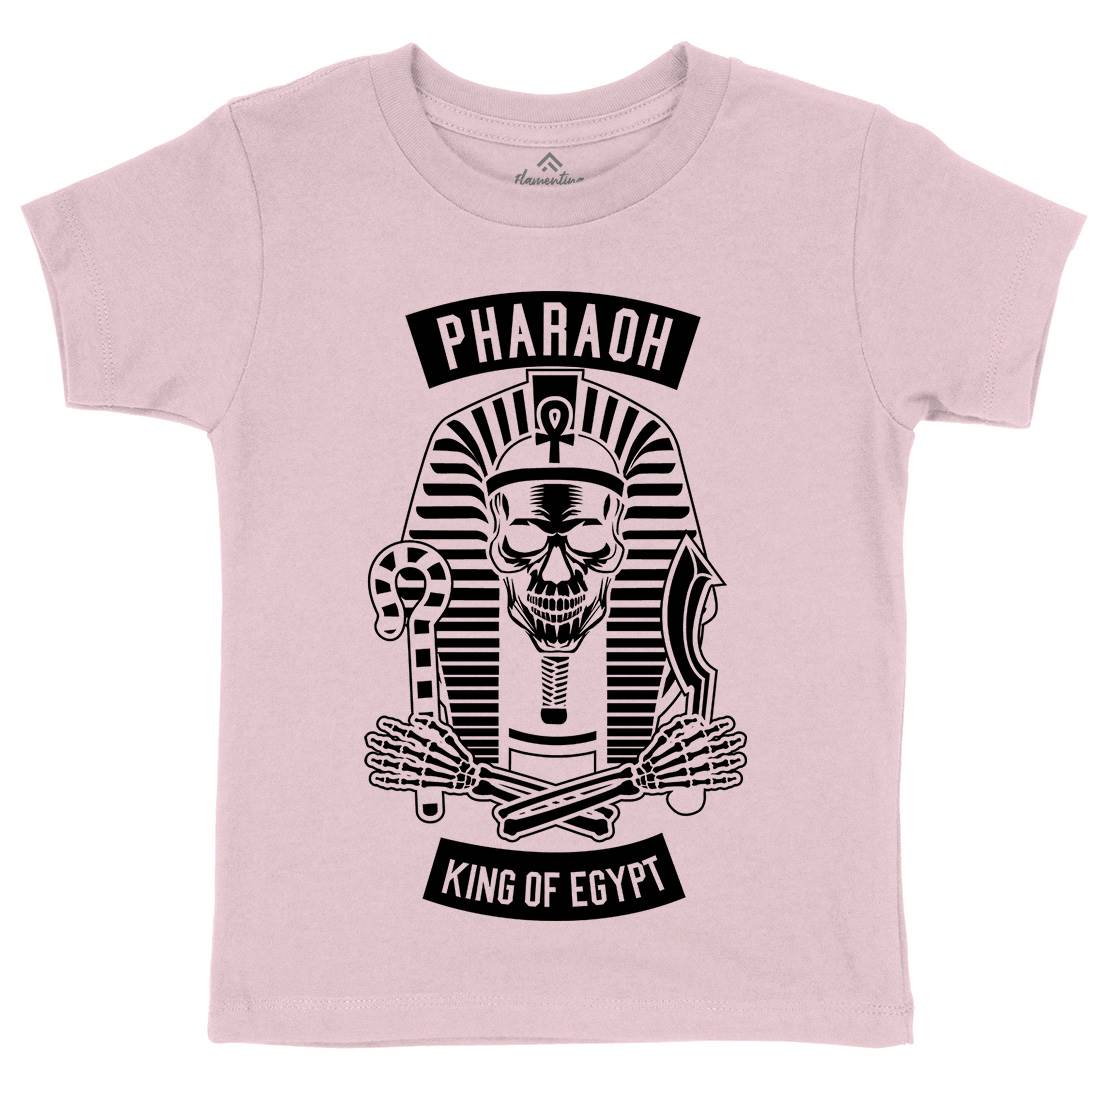 Pharaoh King Of Egypt Kids Crew Neck T-Shirt Religion B596